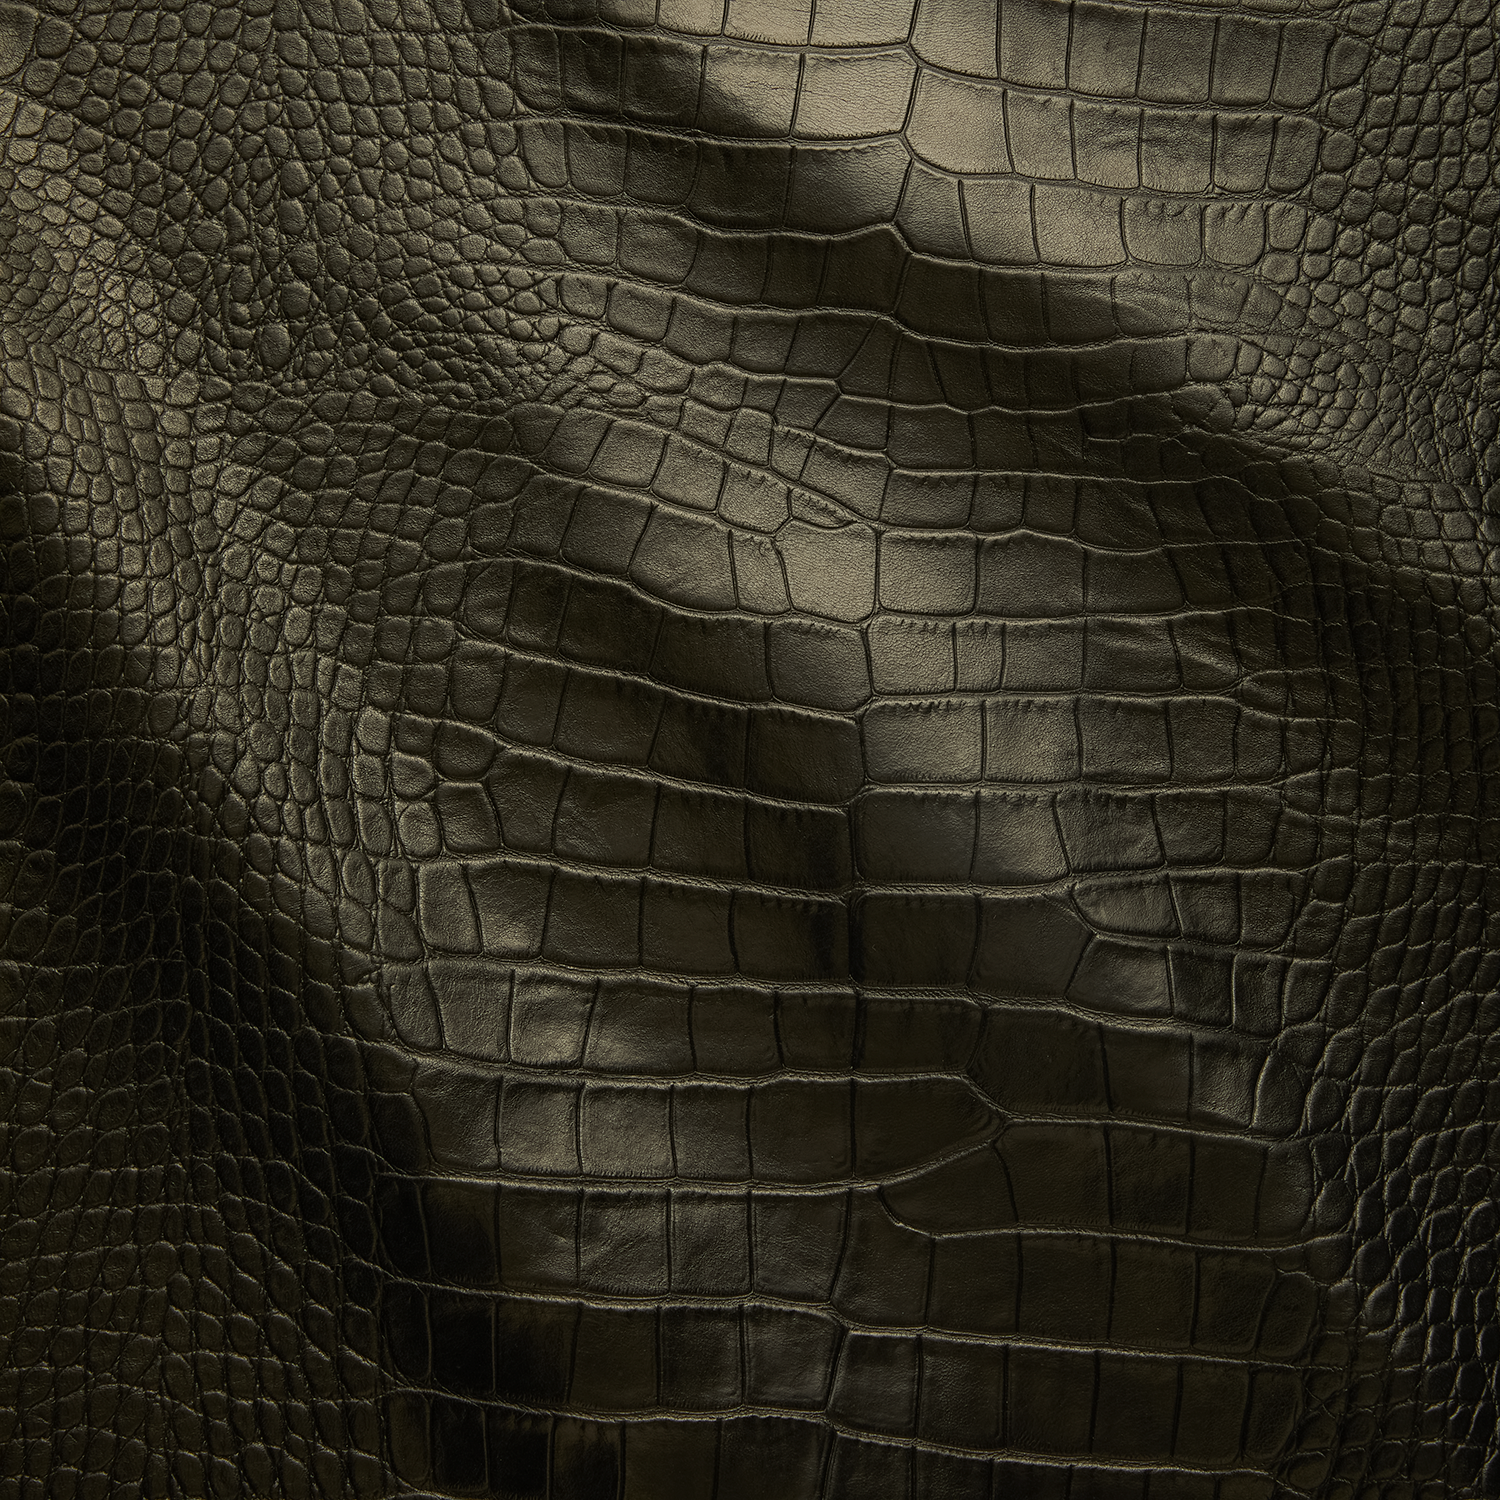 Black Crocodile Alligator Leather Embossed Texture Amazing 